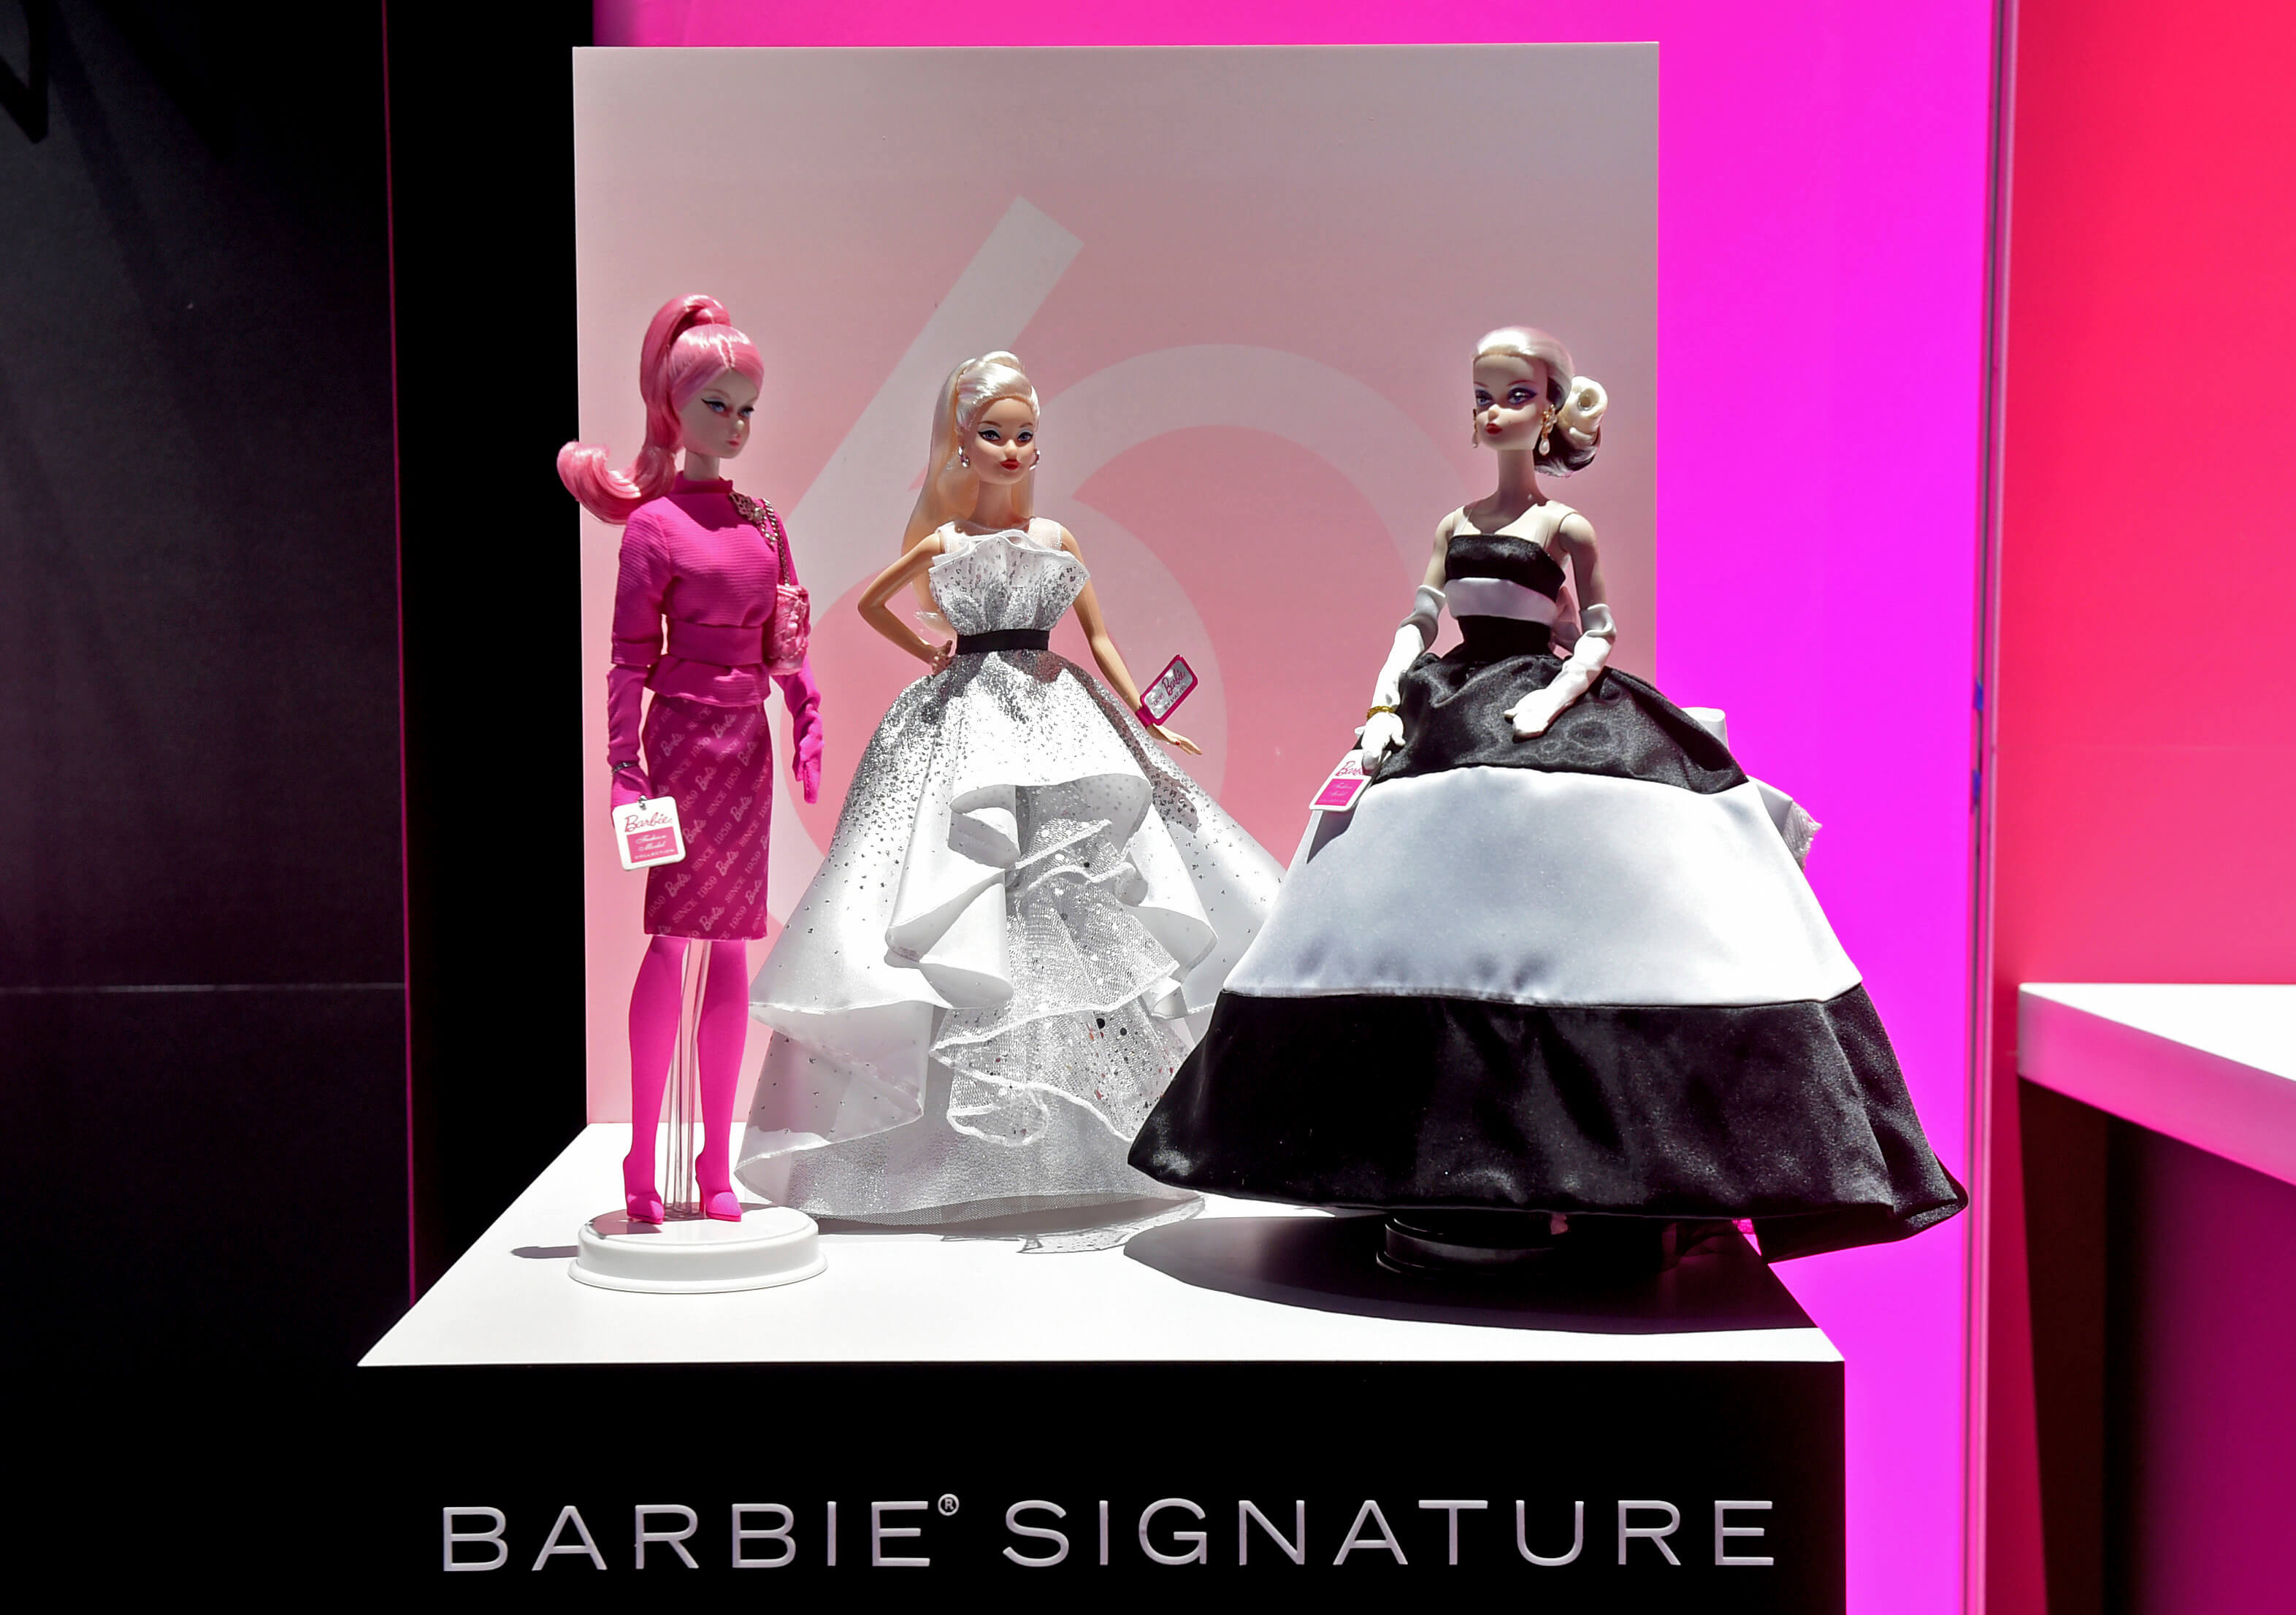 La muñeca Barbie, de fiesta por el mundo por su 60 cumpleaños